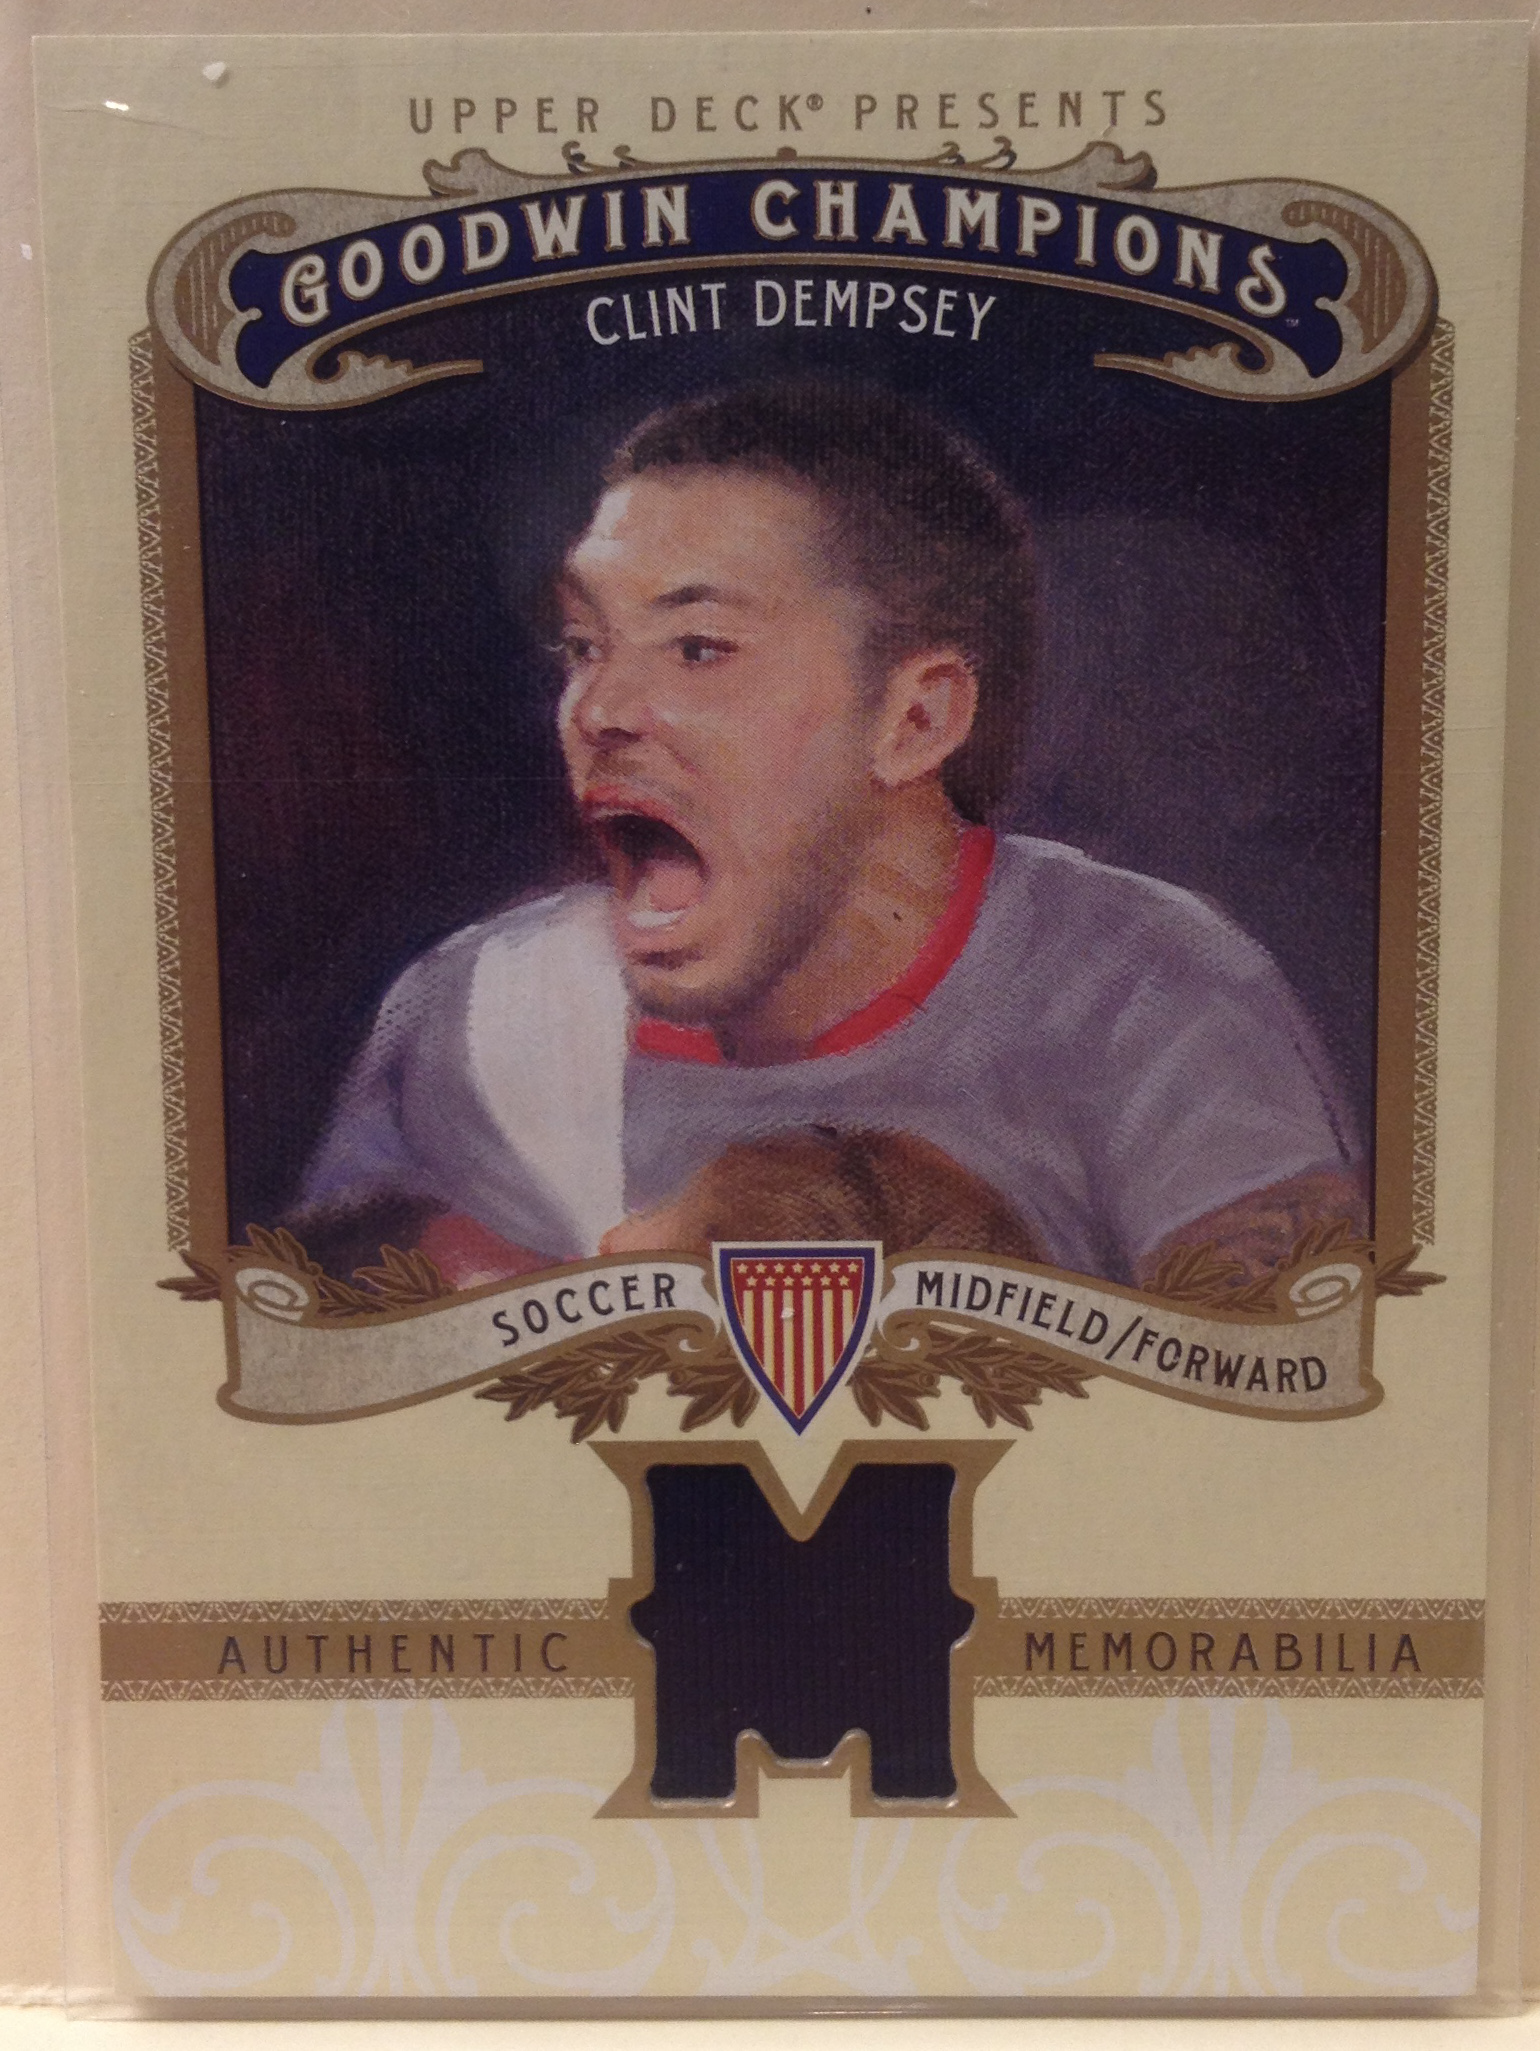 2012 Upper Deck Goodwin Champions Memorabilia #MCD Clint Dempsey E